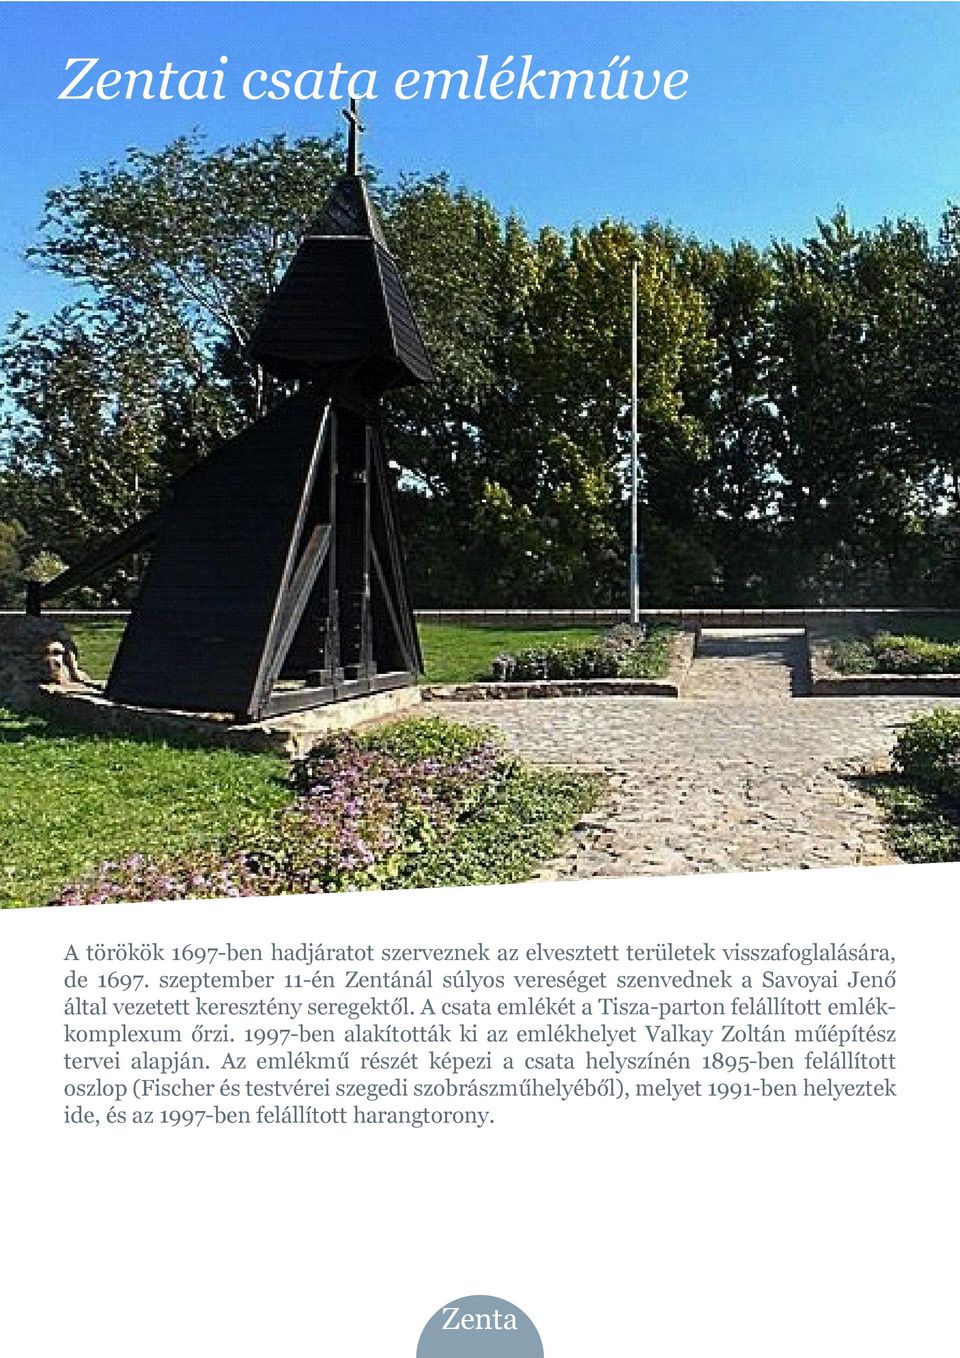 A csata emlékét a Tisza-parton felállított emlékkomplexum őrzi. 1997-ben alakították ki az emlékhelyet Valkay Zoltán műépítész tervei alapján.